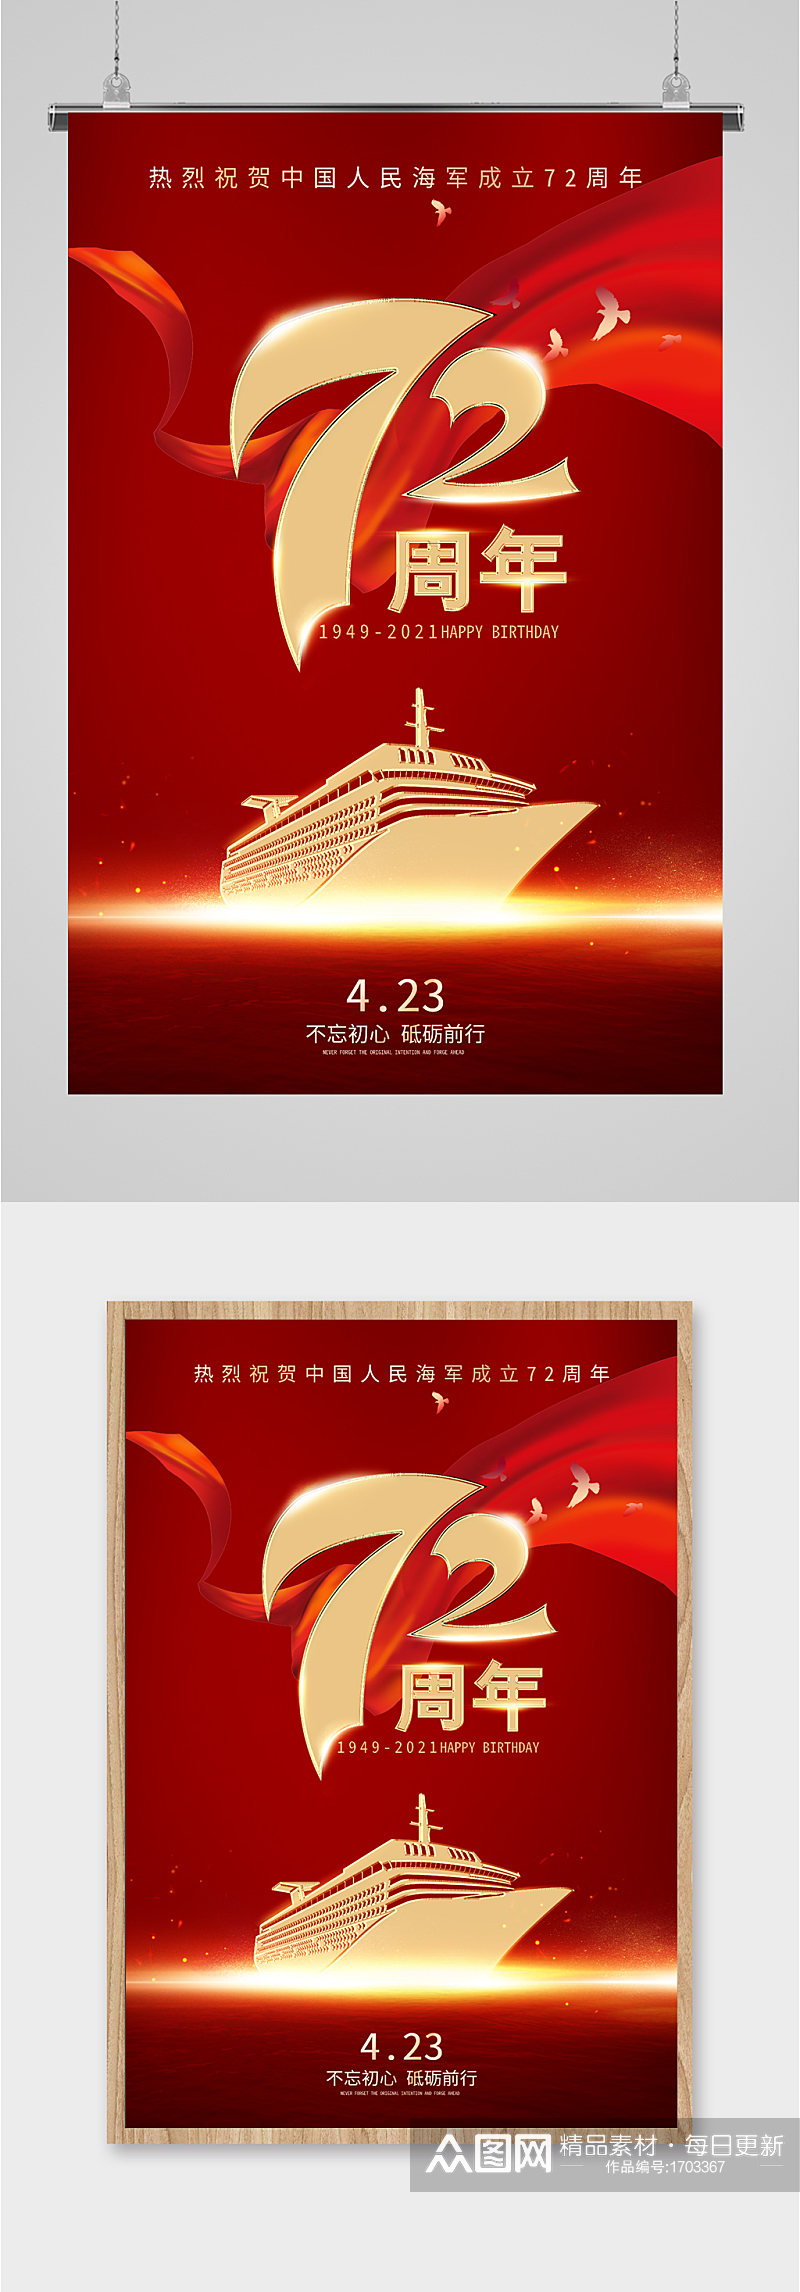 中国海军成立72周年红色海报素材